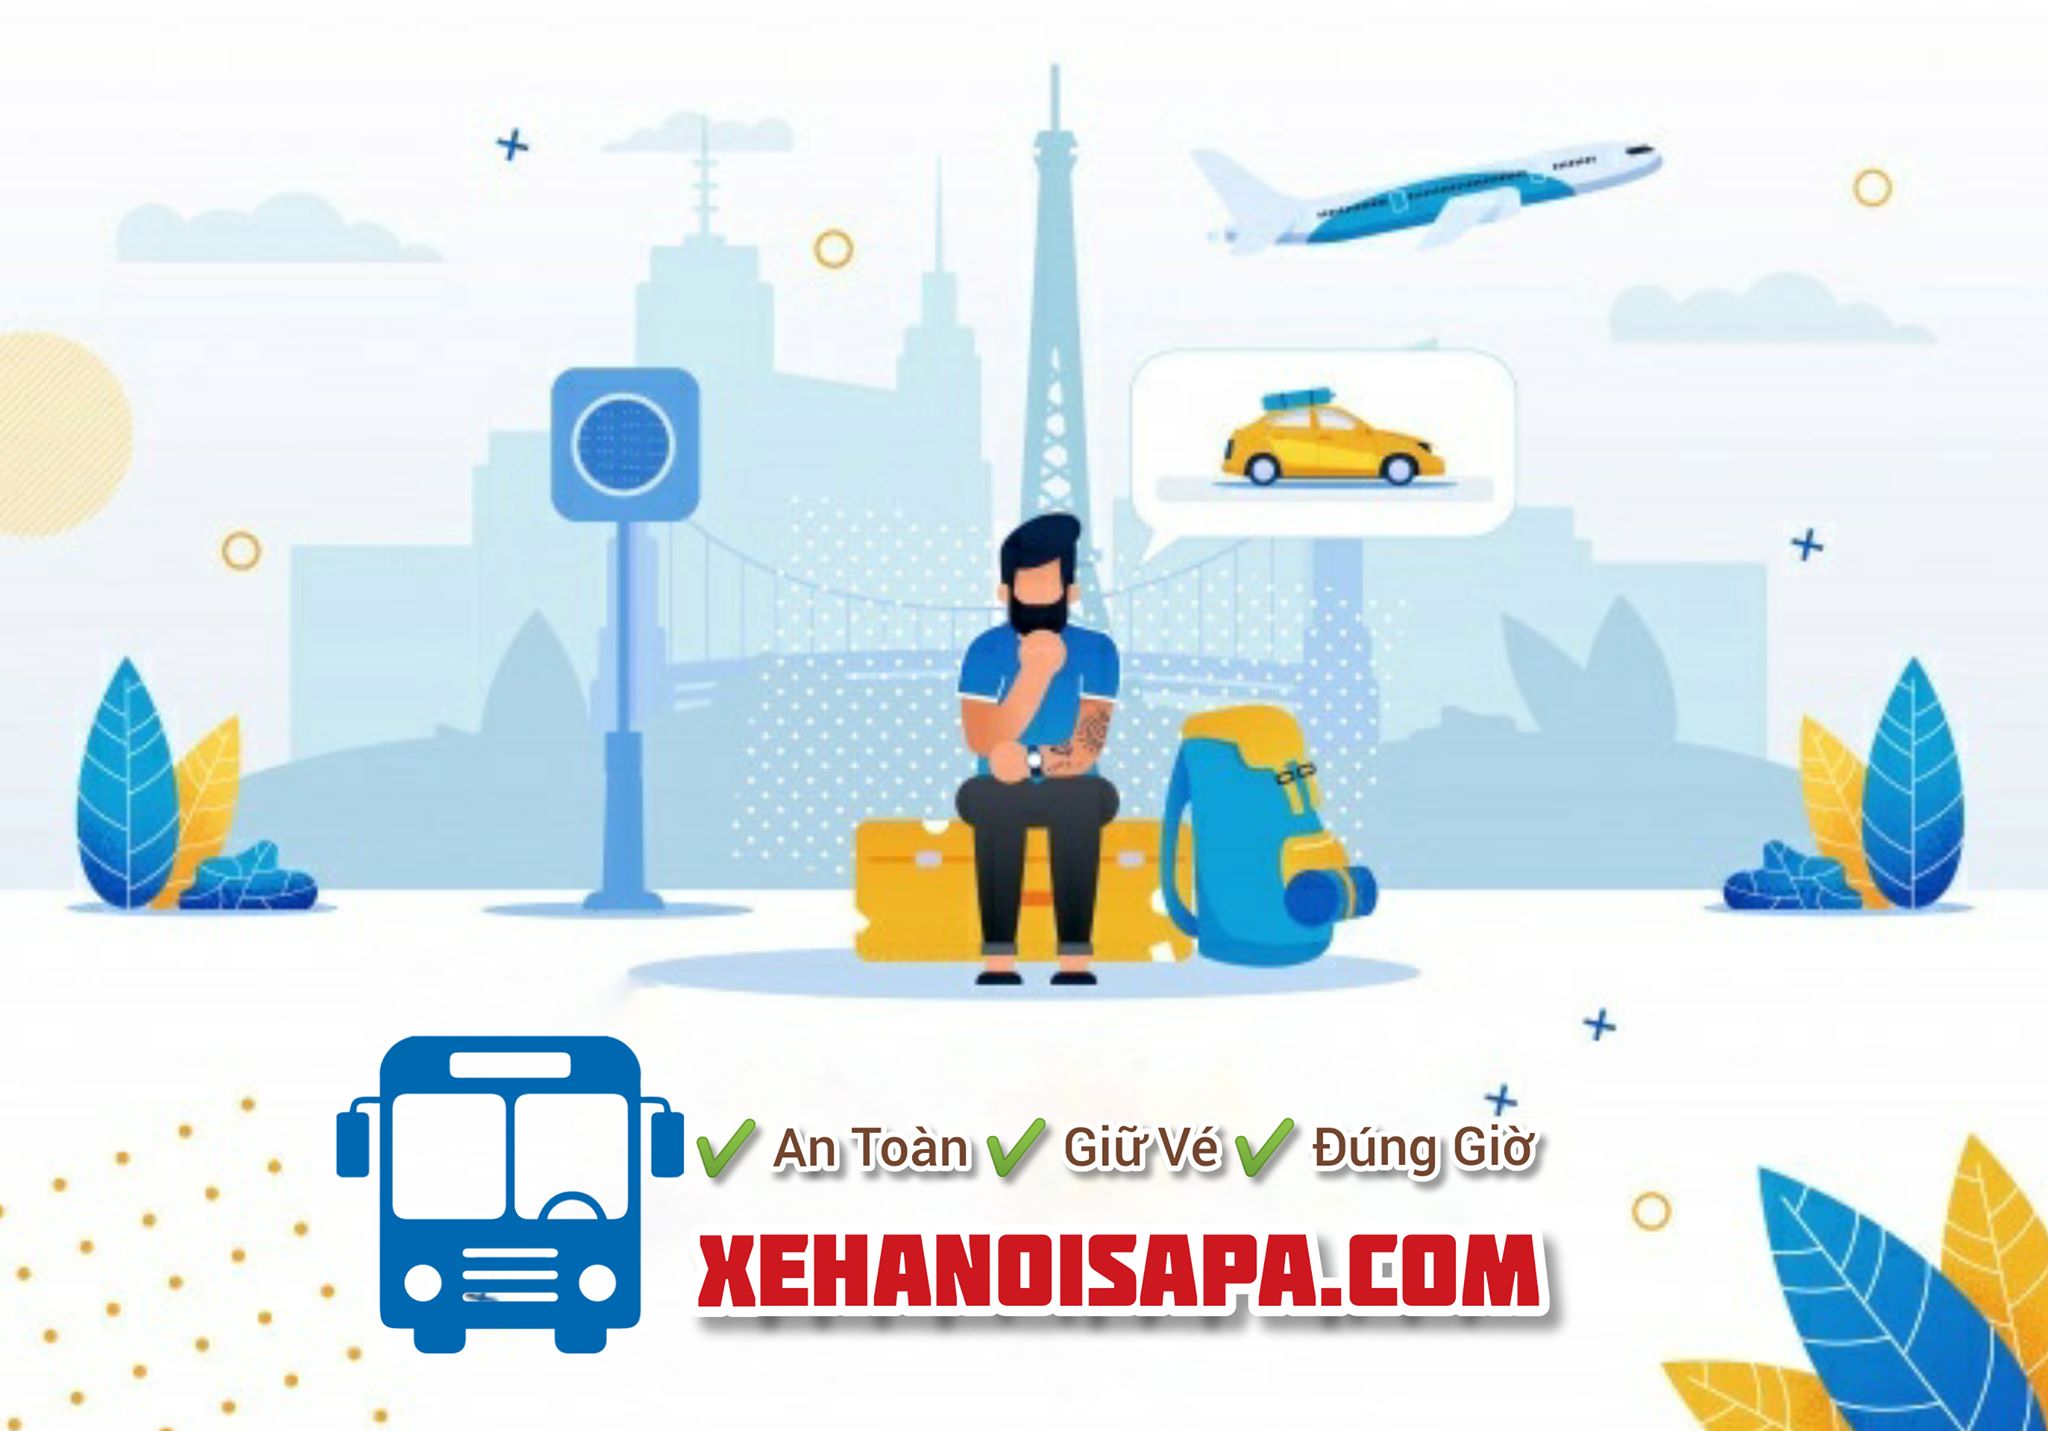 Hãng xe Sapa Dragon - Booking an toàn, nhanh chóng tại Xehanoisapa.com